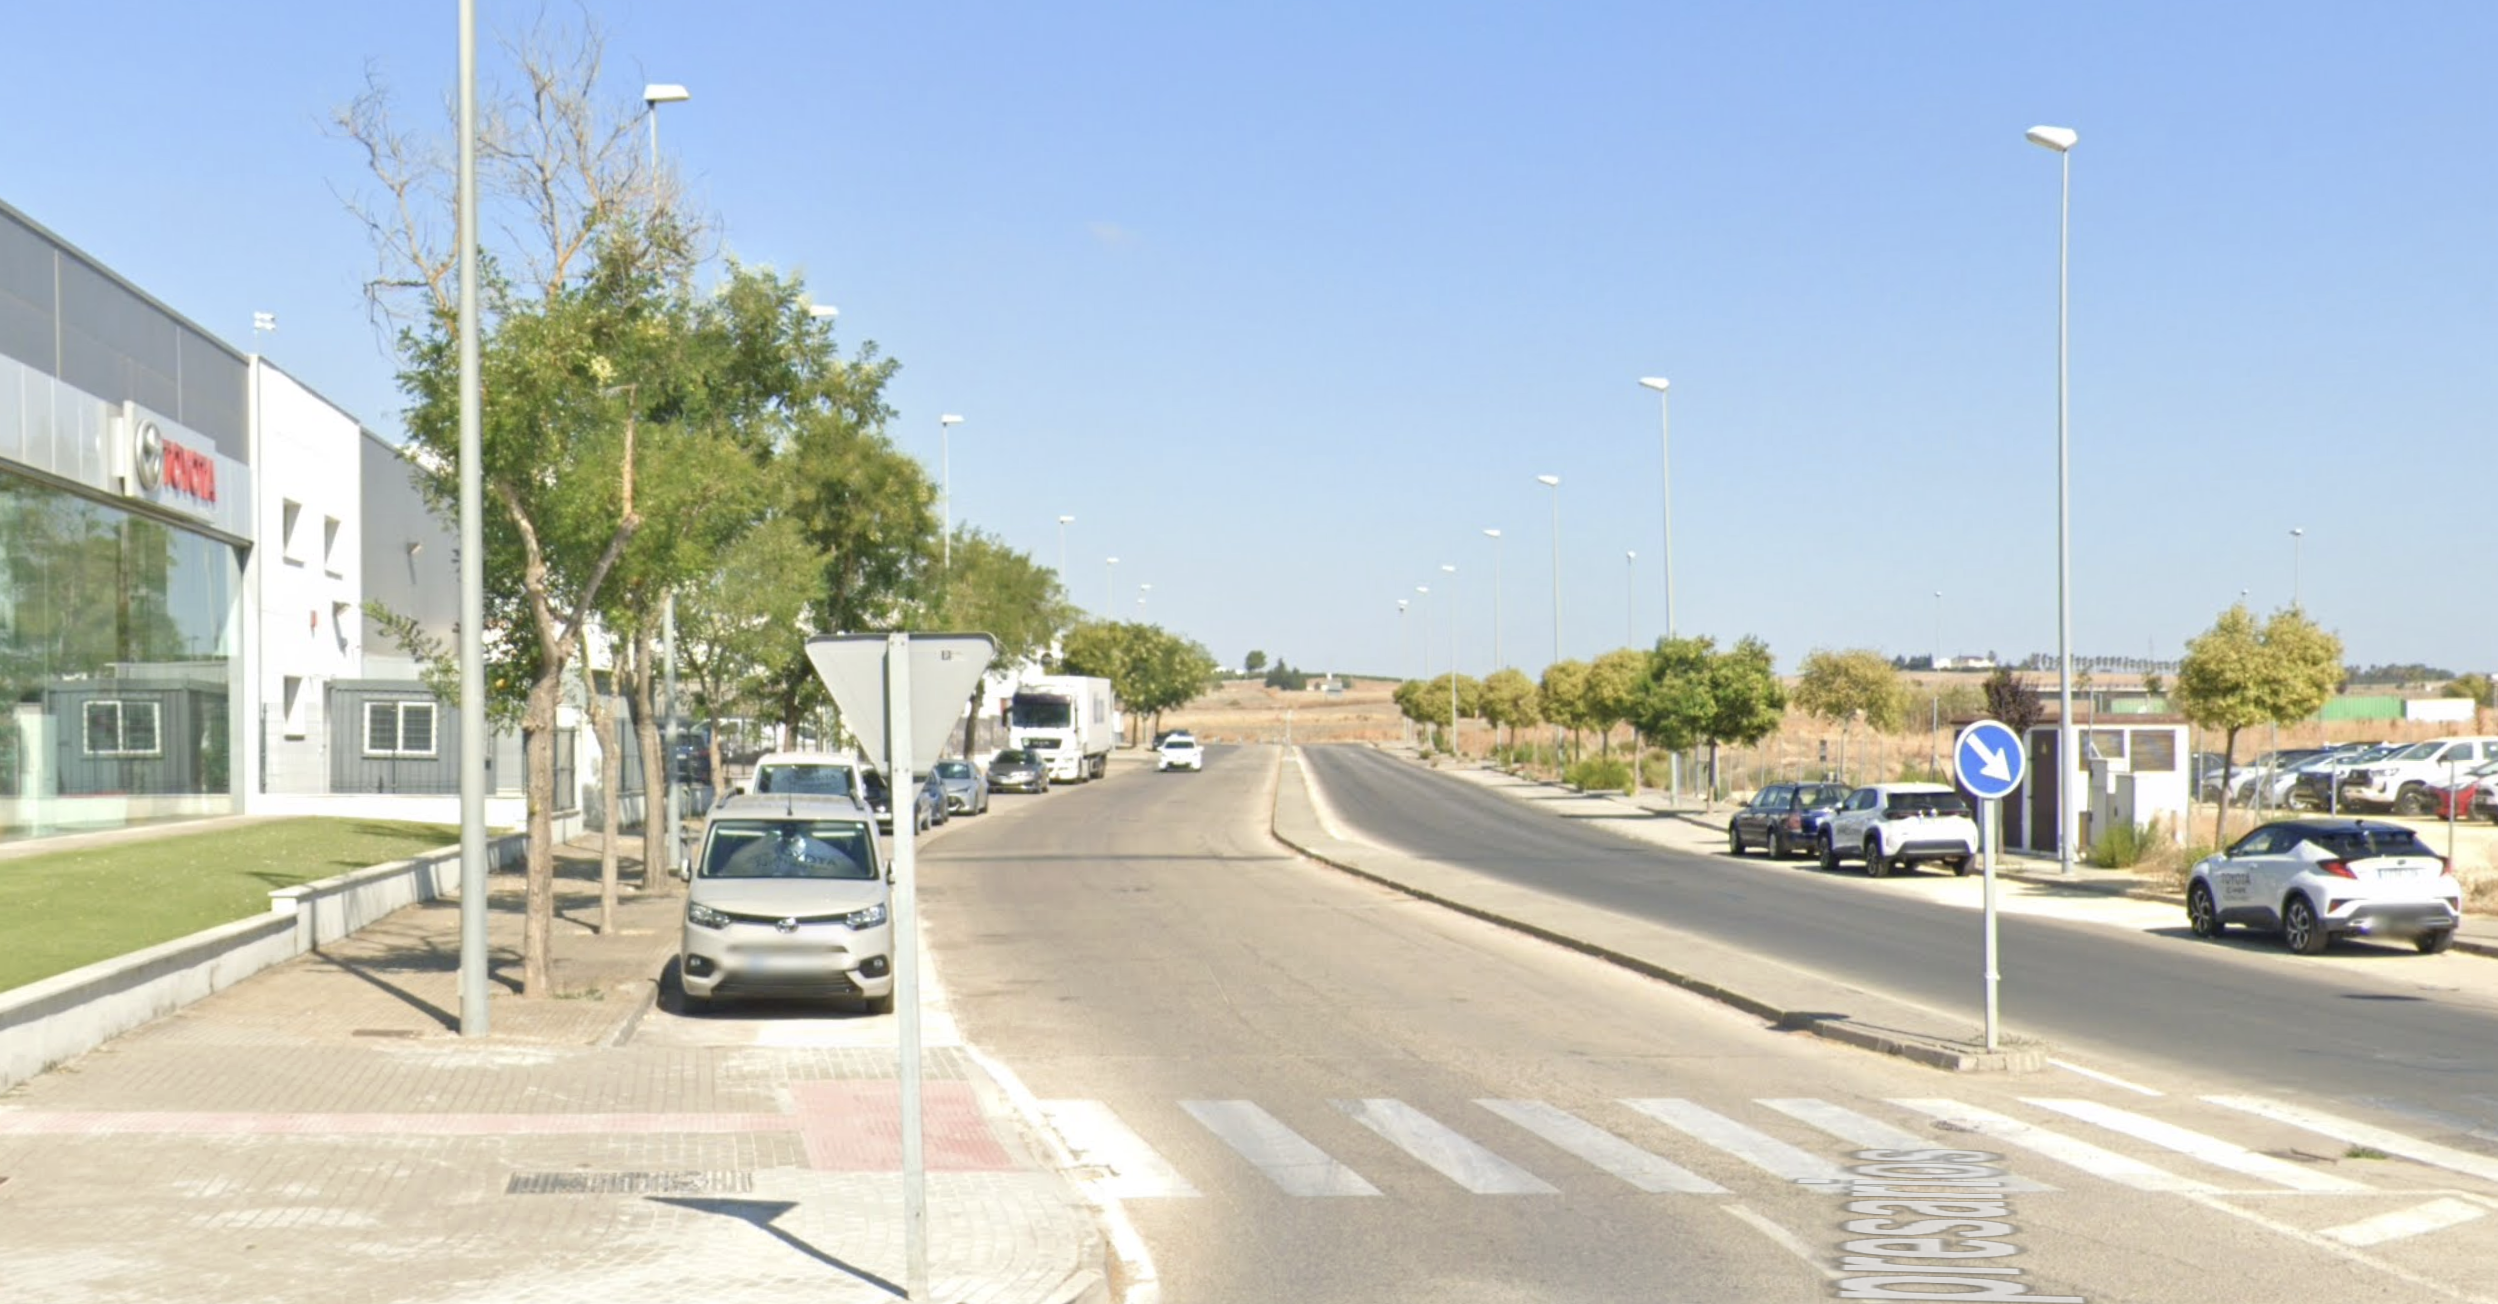 En la imagen de Google Maps, concesionario de Toyota y suelos, justo enfrente, de La Norieta, donde abrirá el concesionario de coches de lujo en Jerez.